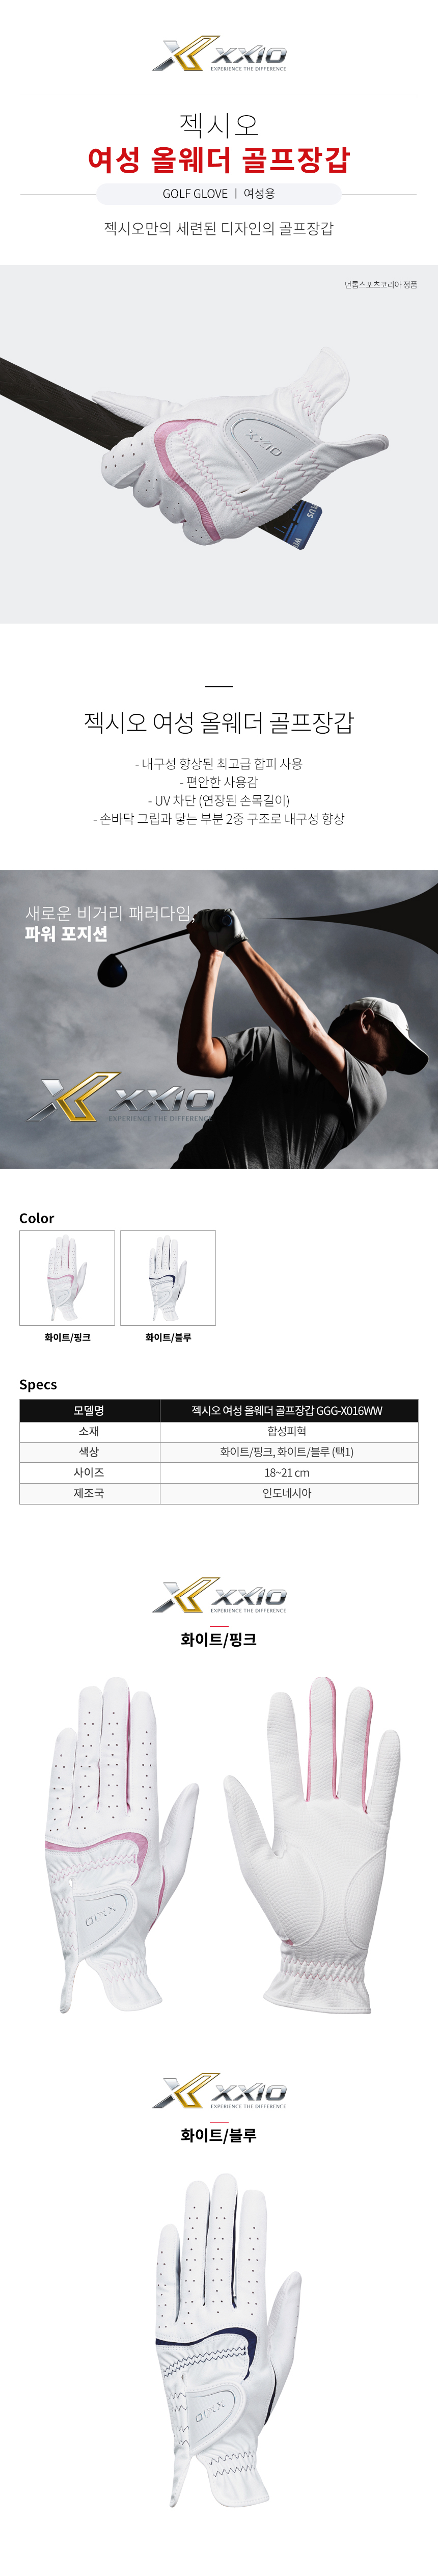 dunlop_xxio_w_synthetic_leather_glove_GGG X016WW_21.jpg